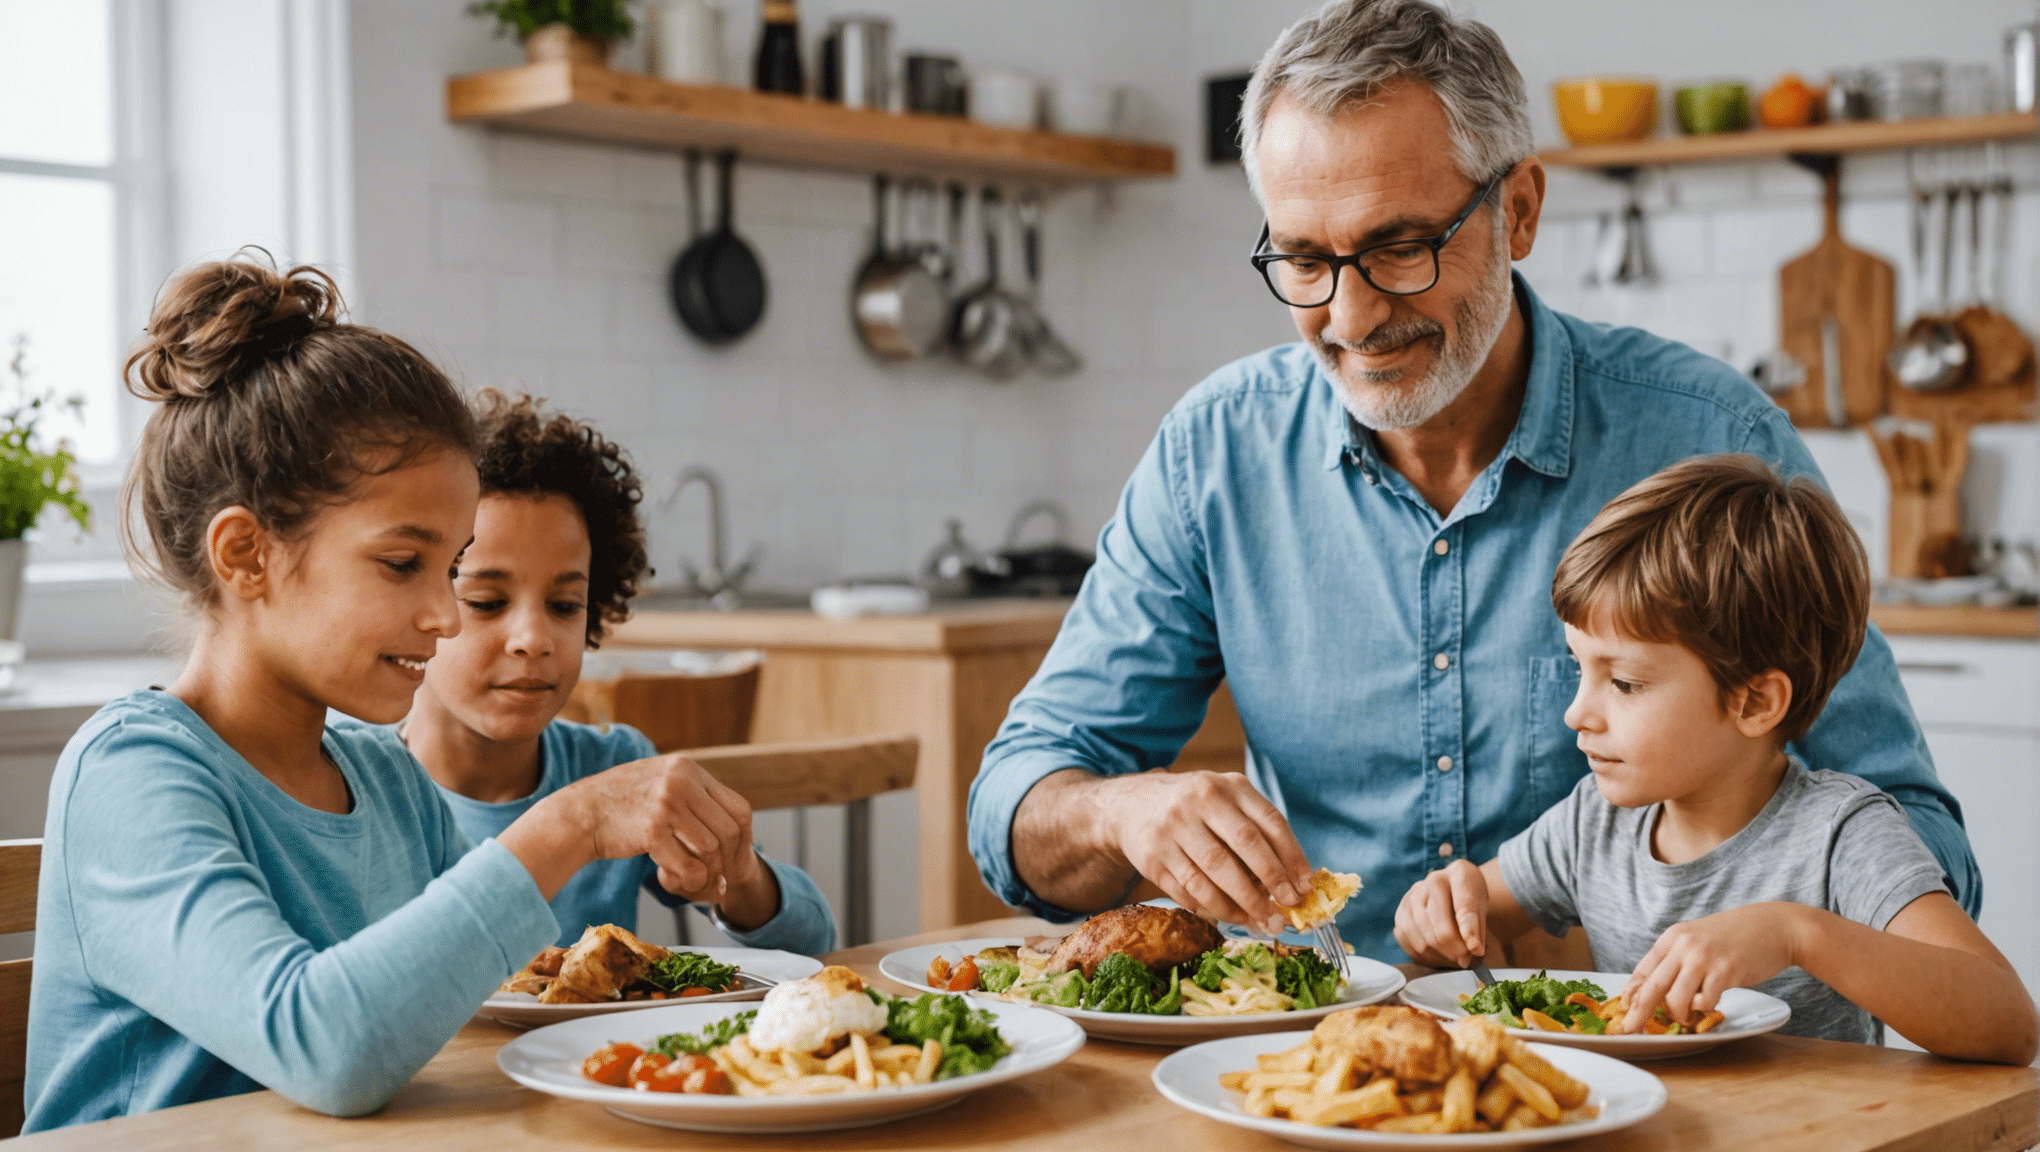 découvrez des conseils et astuces pour préparer des repas sains et équilibrés pour toute la famille. des recettes faciles et nutritives adaptées à tous les membres de la famille.